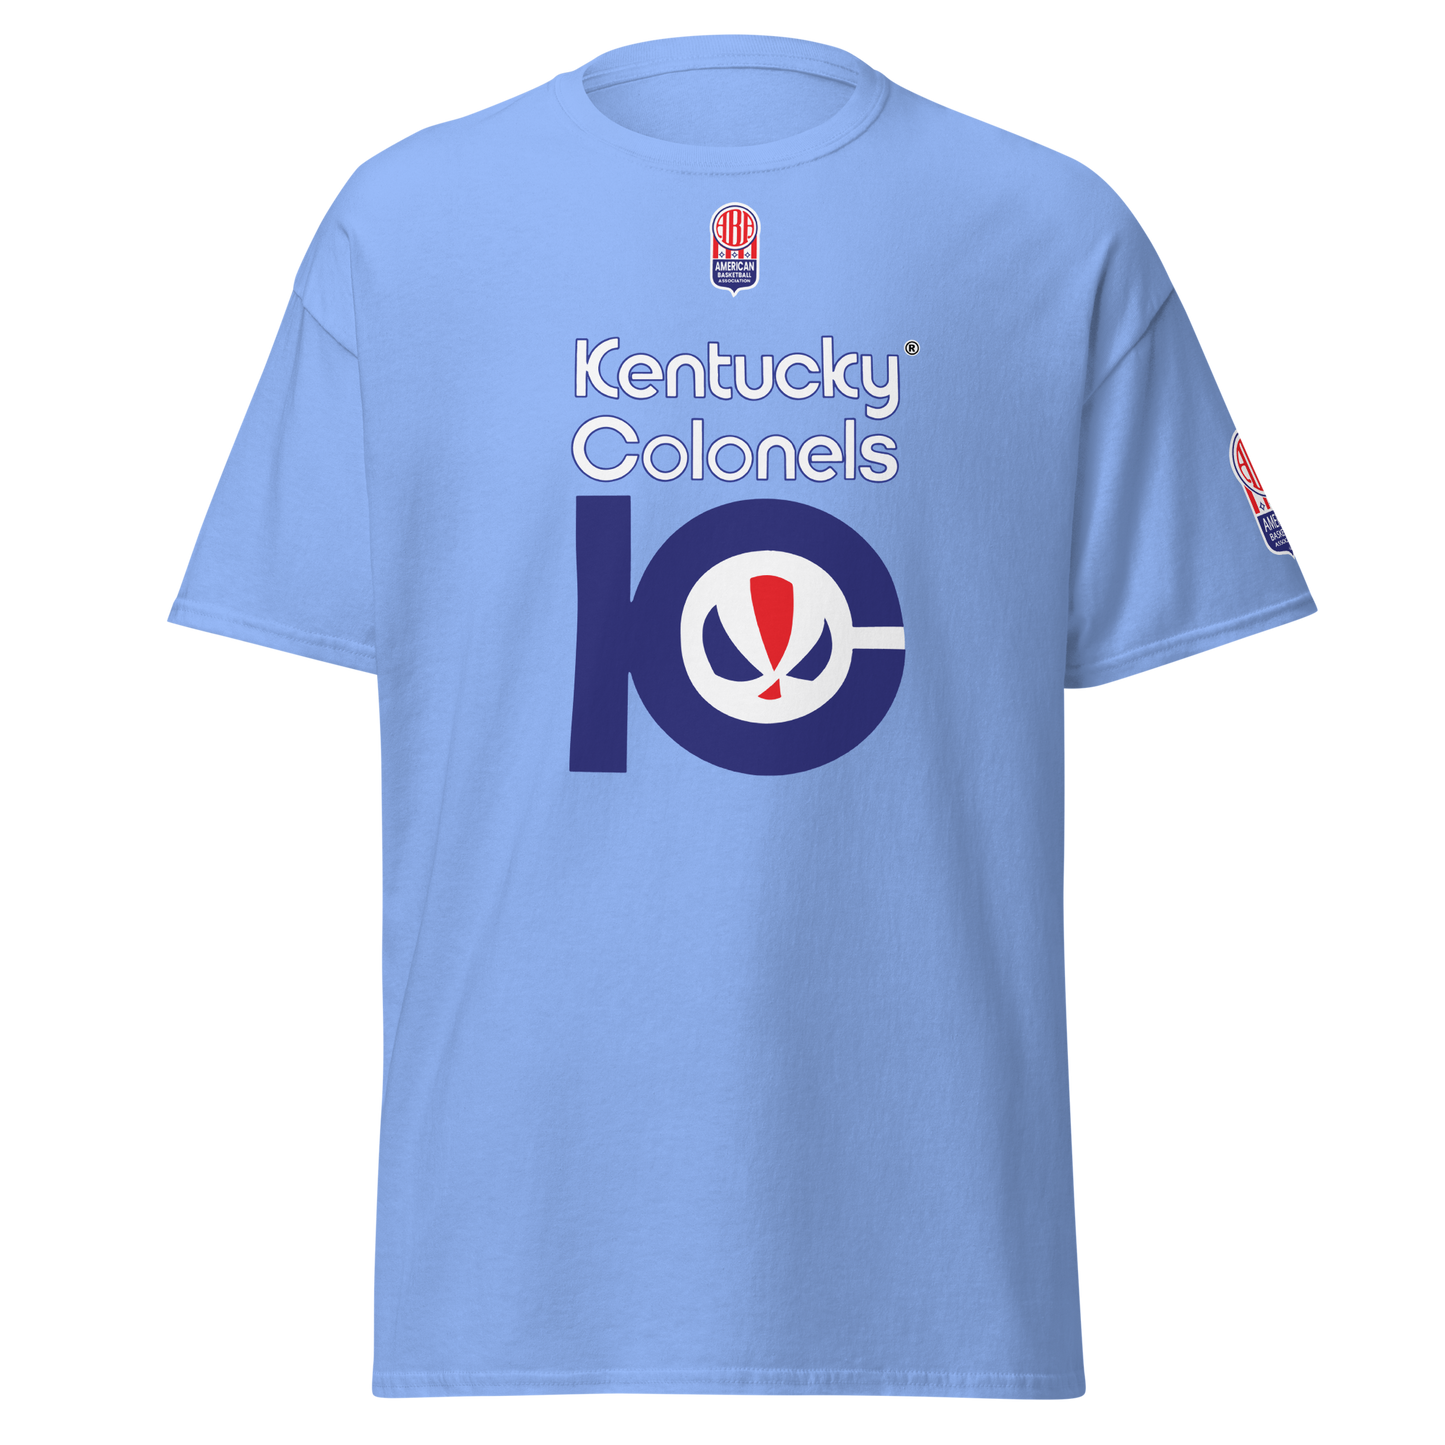 Kentucky Colonels Oldschool ABA T-Shirt! 🏀✨